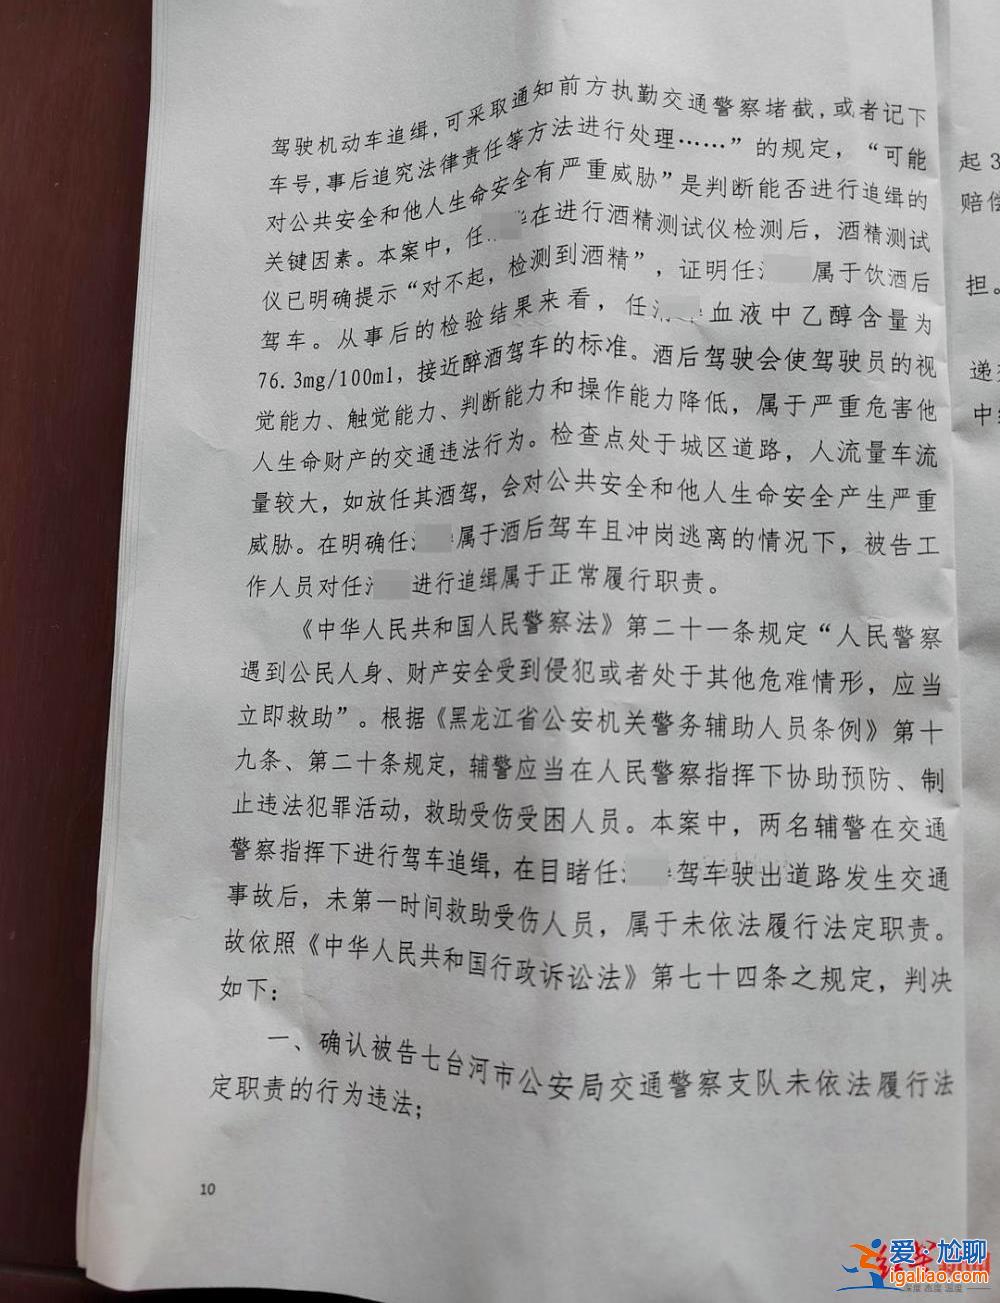 黑龙江一酒驾司机被追缉后撞树重伤死亡 交警径直驶离现场被判违法？